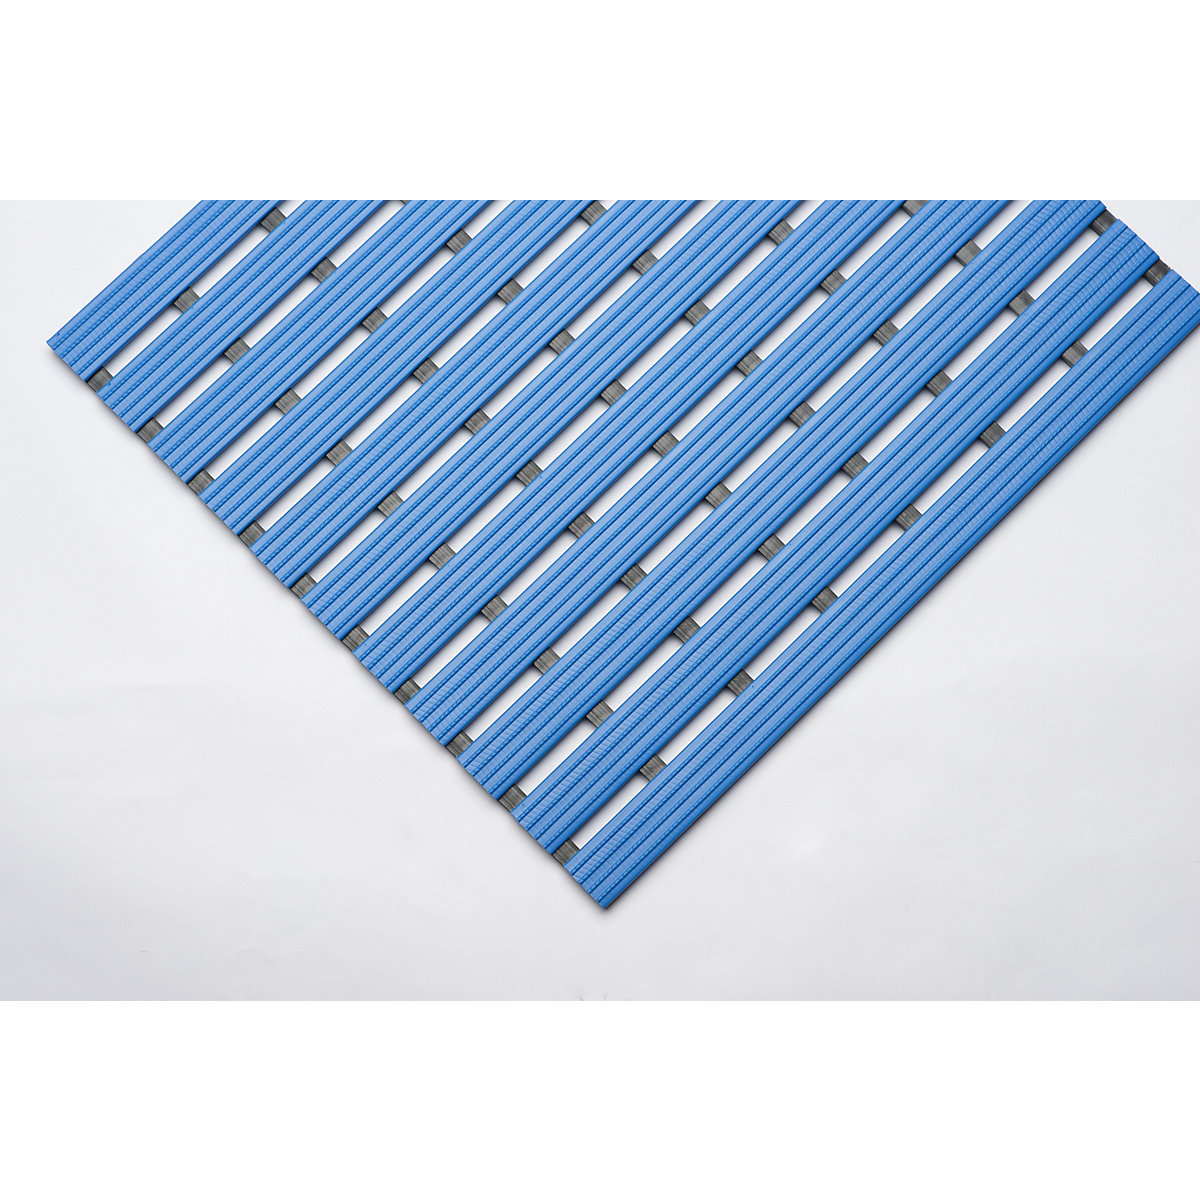 PVC-Profilmatte, pro lfd. m, Lauffläche aus Hart-PVC, rutschsicher, Breite 800 mm, blau-6